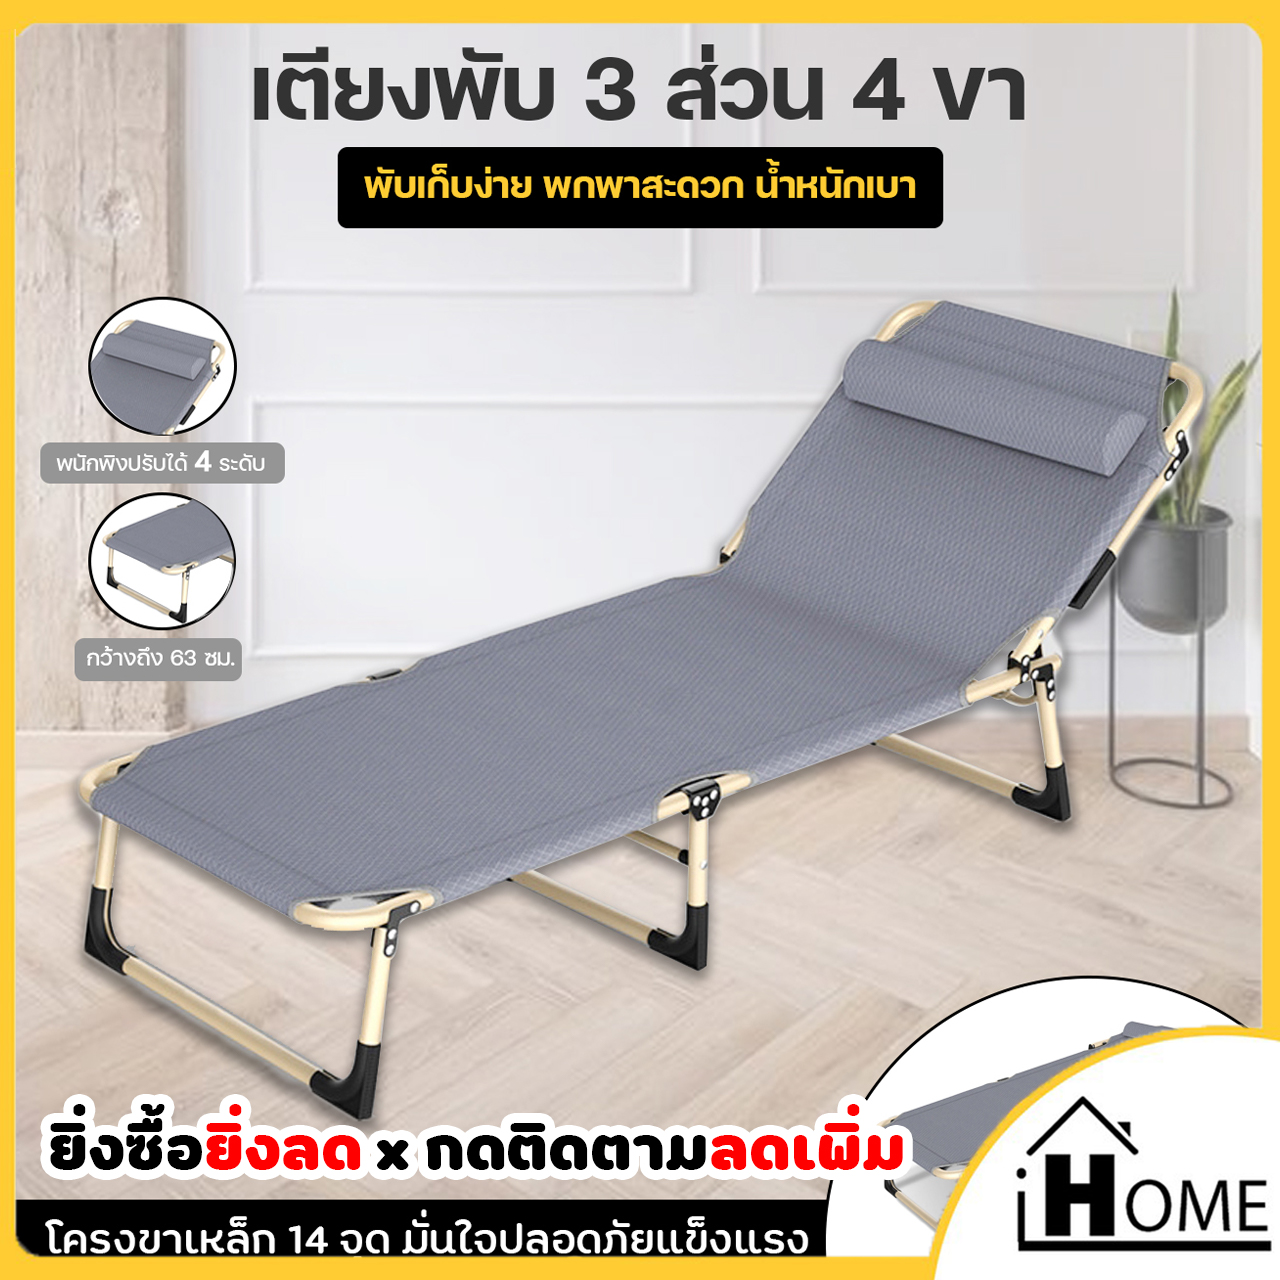 IHOME STORE I90171 เก้าอี้ปรับเอนนอน รุ่น B เตียงพับได้ เตียงสนามพับได้ เตียงพกพา สะดวก ใช้งานง่าย